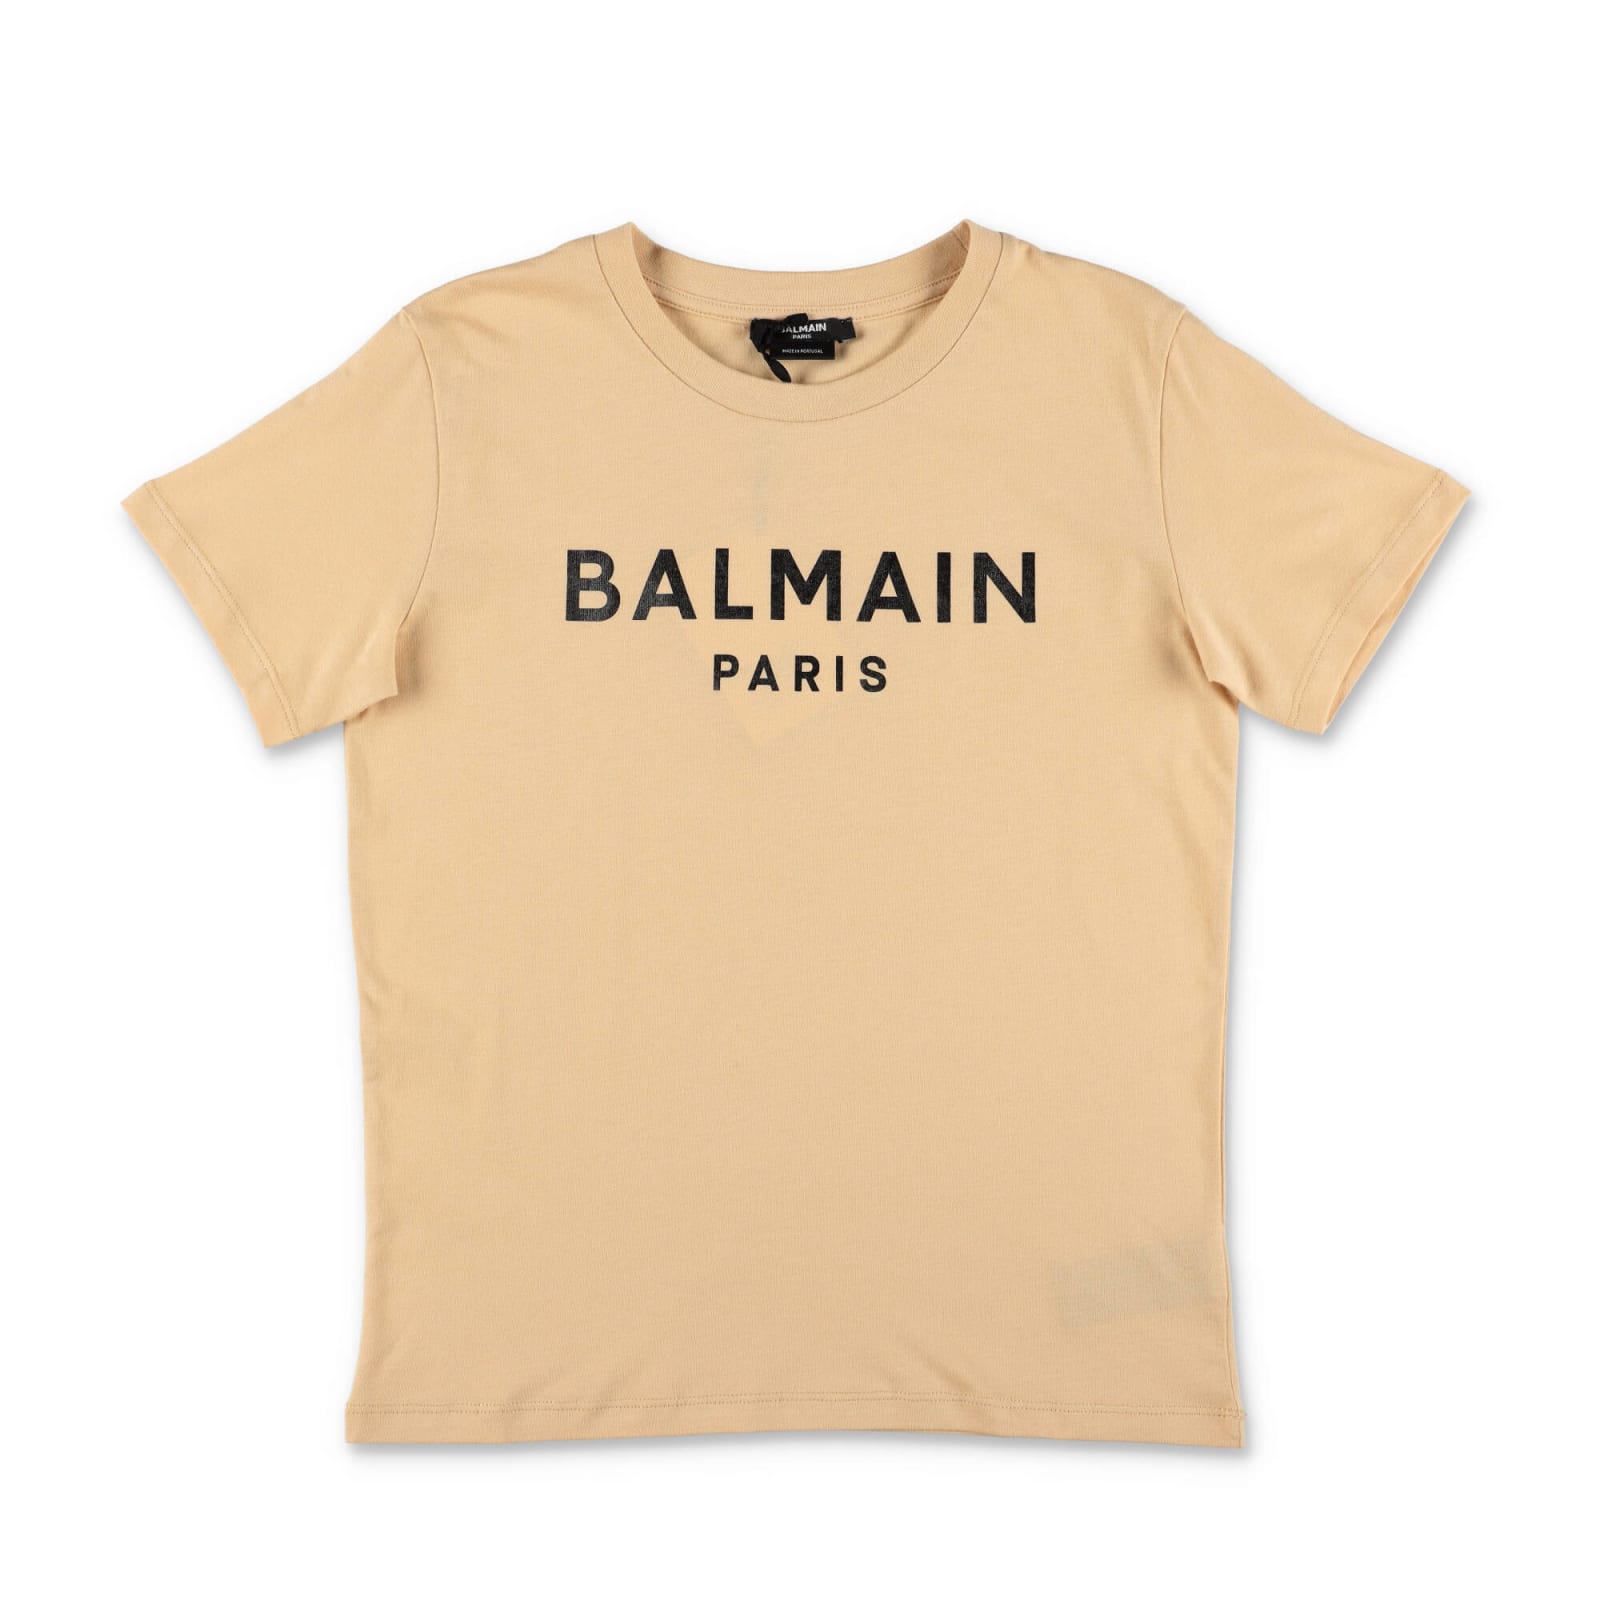 BALMAIN BALMAIN T-SHIRT BEIGE IN JERSEY DI COTONE BAMBINO